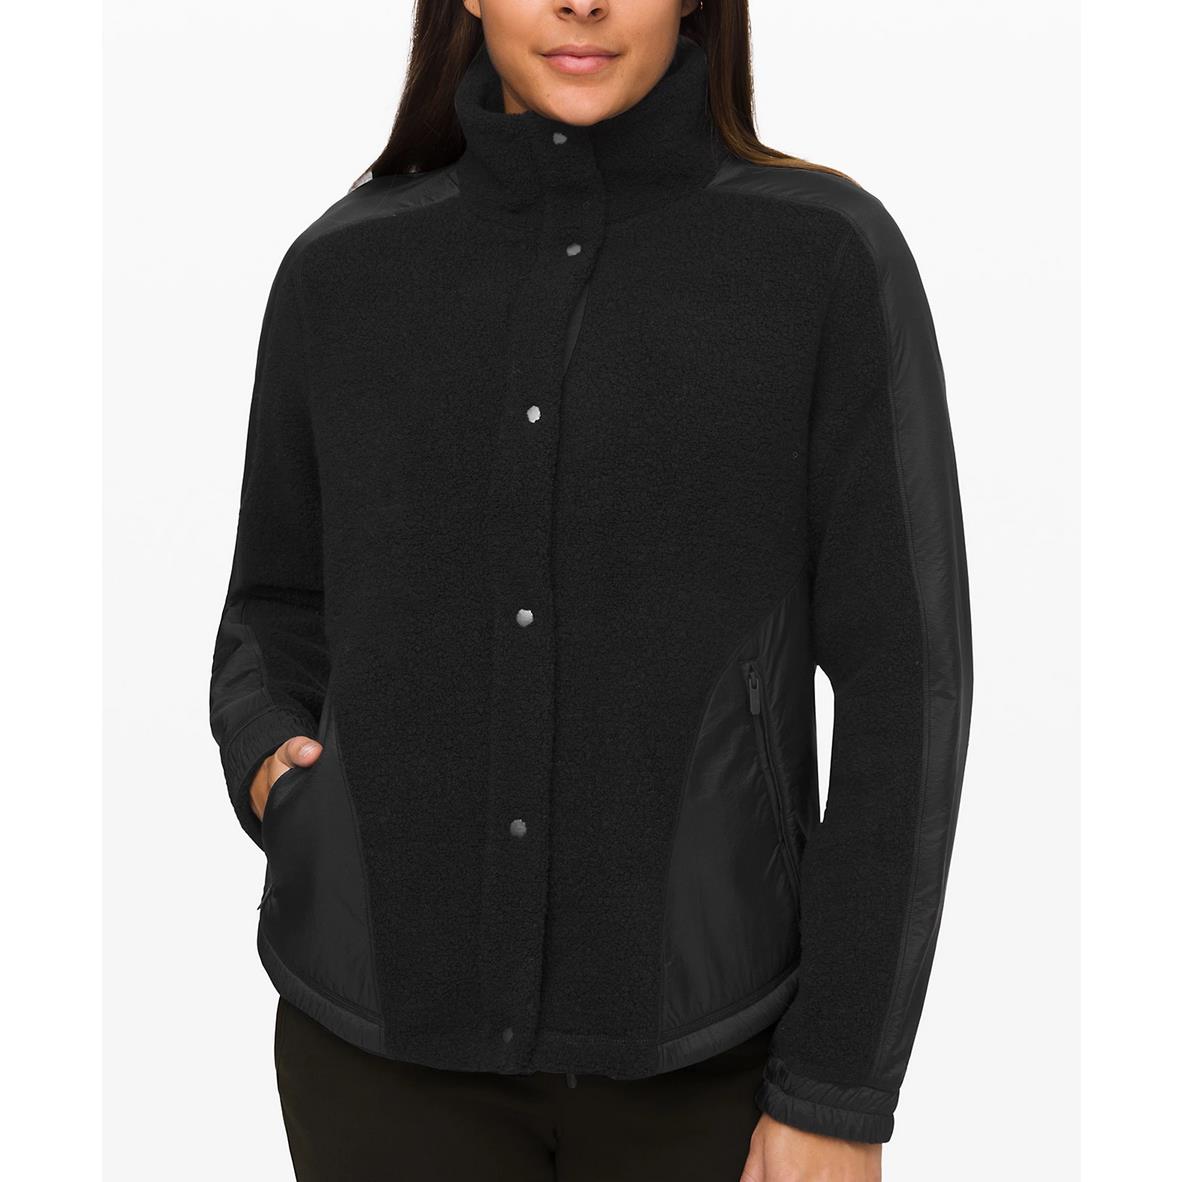 Lululemon Women`s Go Cozy Jacket Soft Wool Blend Sherpa Fleece Black Size 8